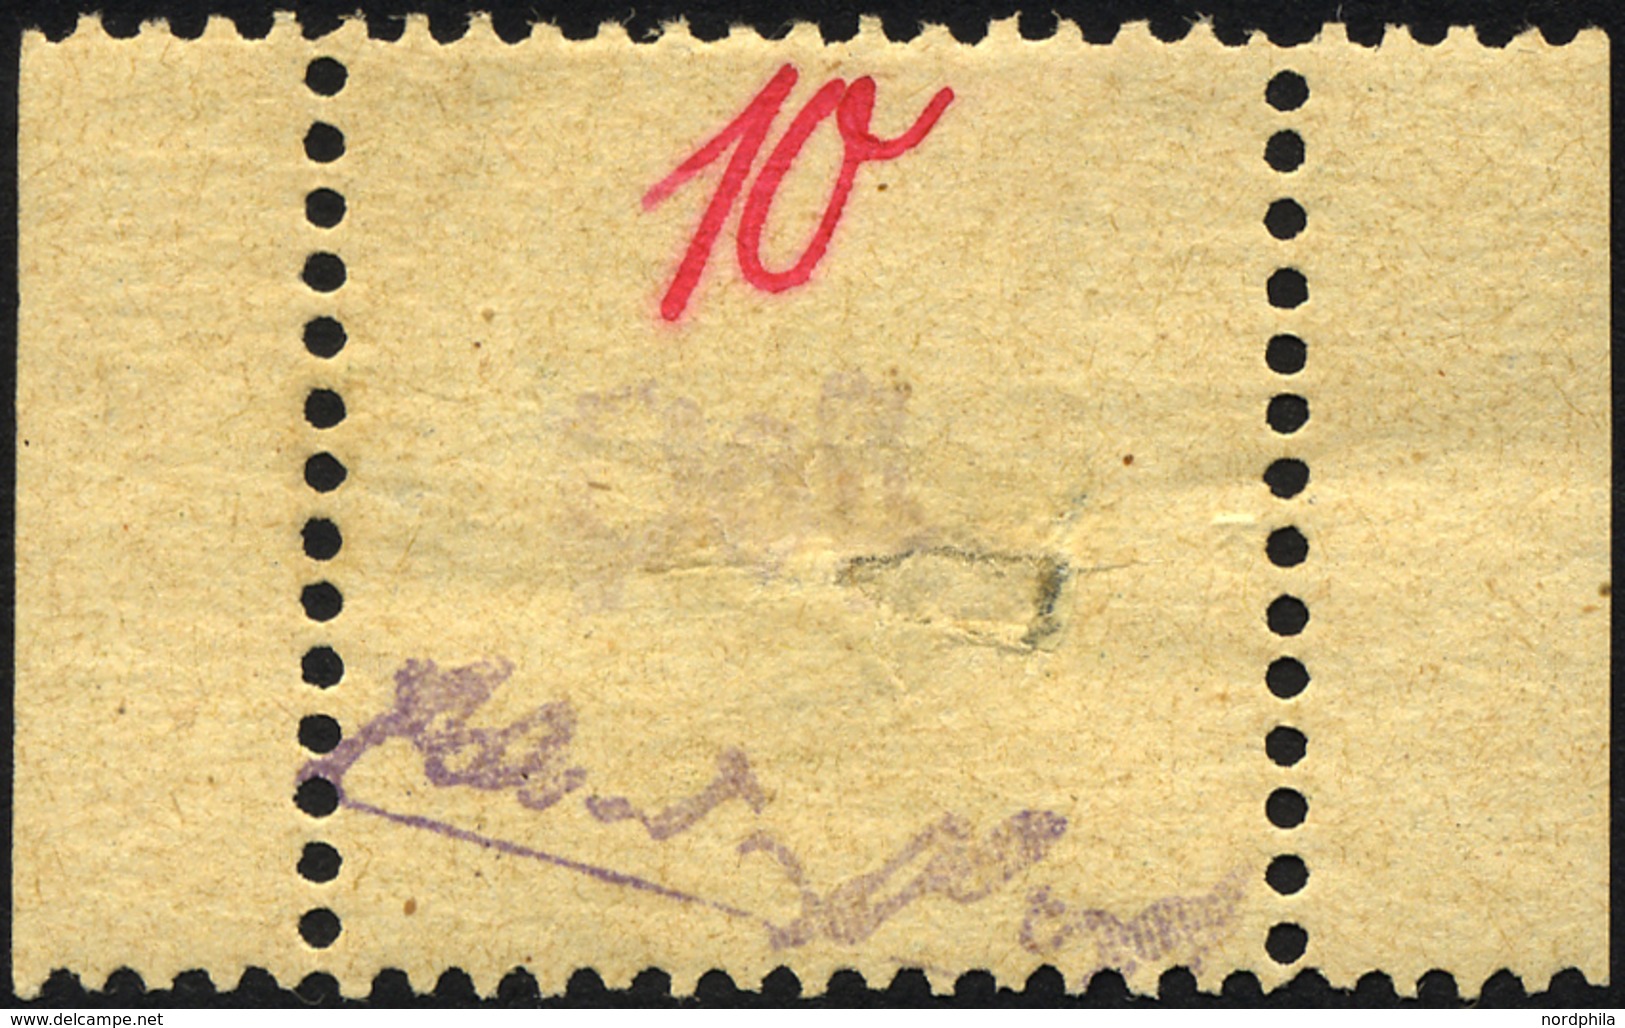 GROSSRÄSCHEN 6S *, 1945, 10 Pf. Gebührenmarke Aus Streifen, Falzreste, Große Fehlstelle In Der Markenmitte, Gepr. Kunz,  - Private & Lokale Post